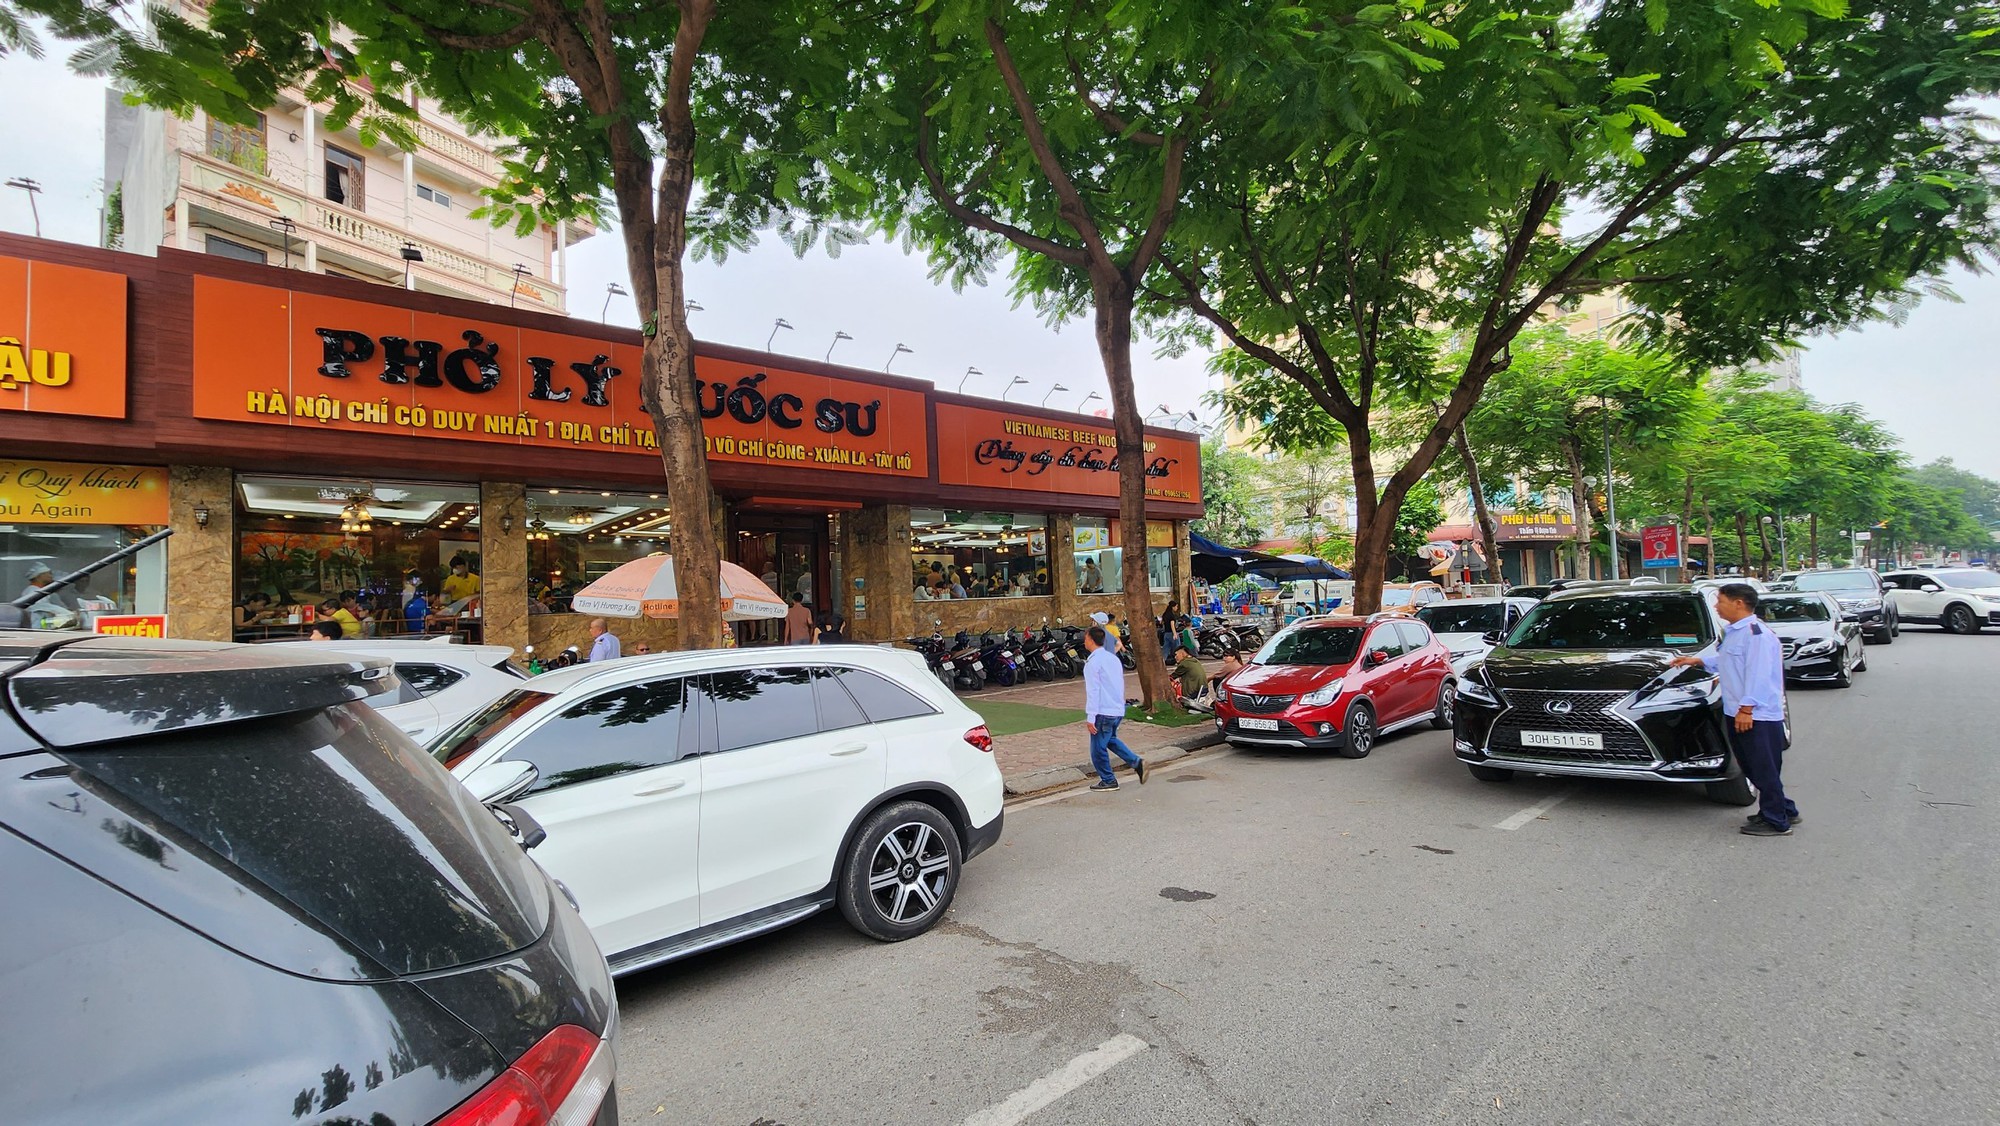   Hà Nội: Ngang nhiên biến vỉa hè, lòng đường Võ Chí Công thành nơi đỗ xe, kinh doanh  - Ảnh 3.